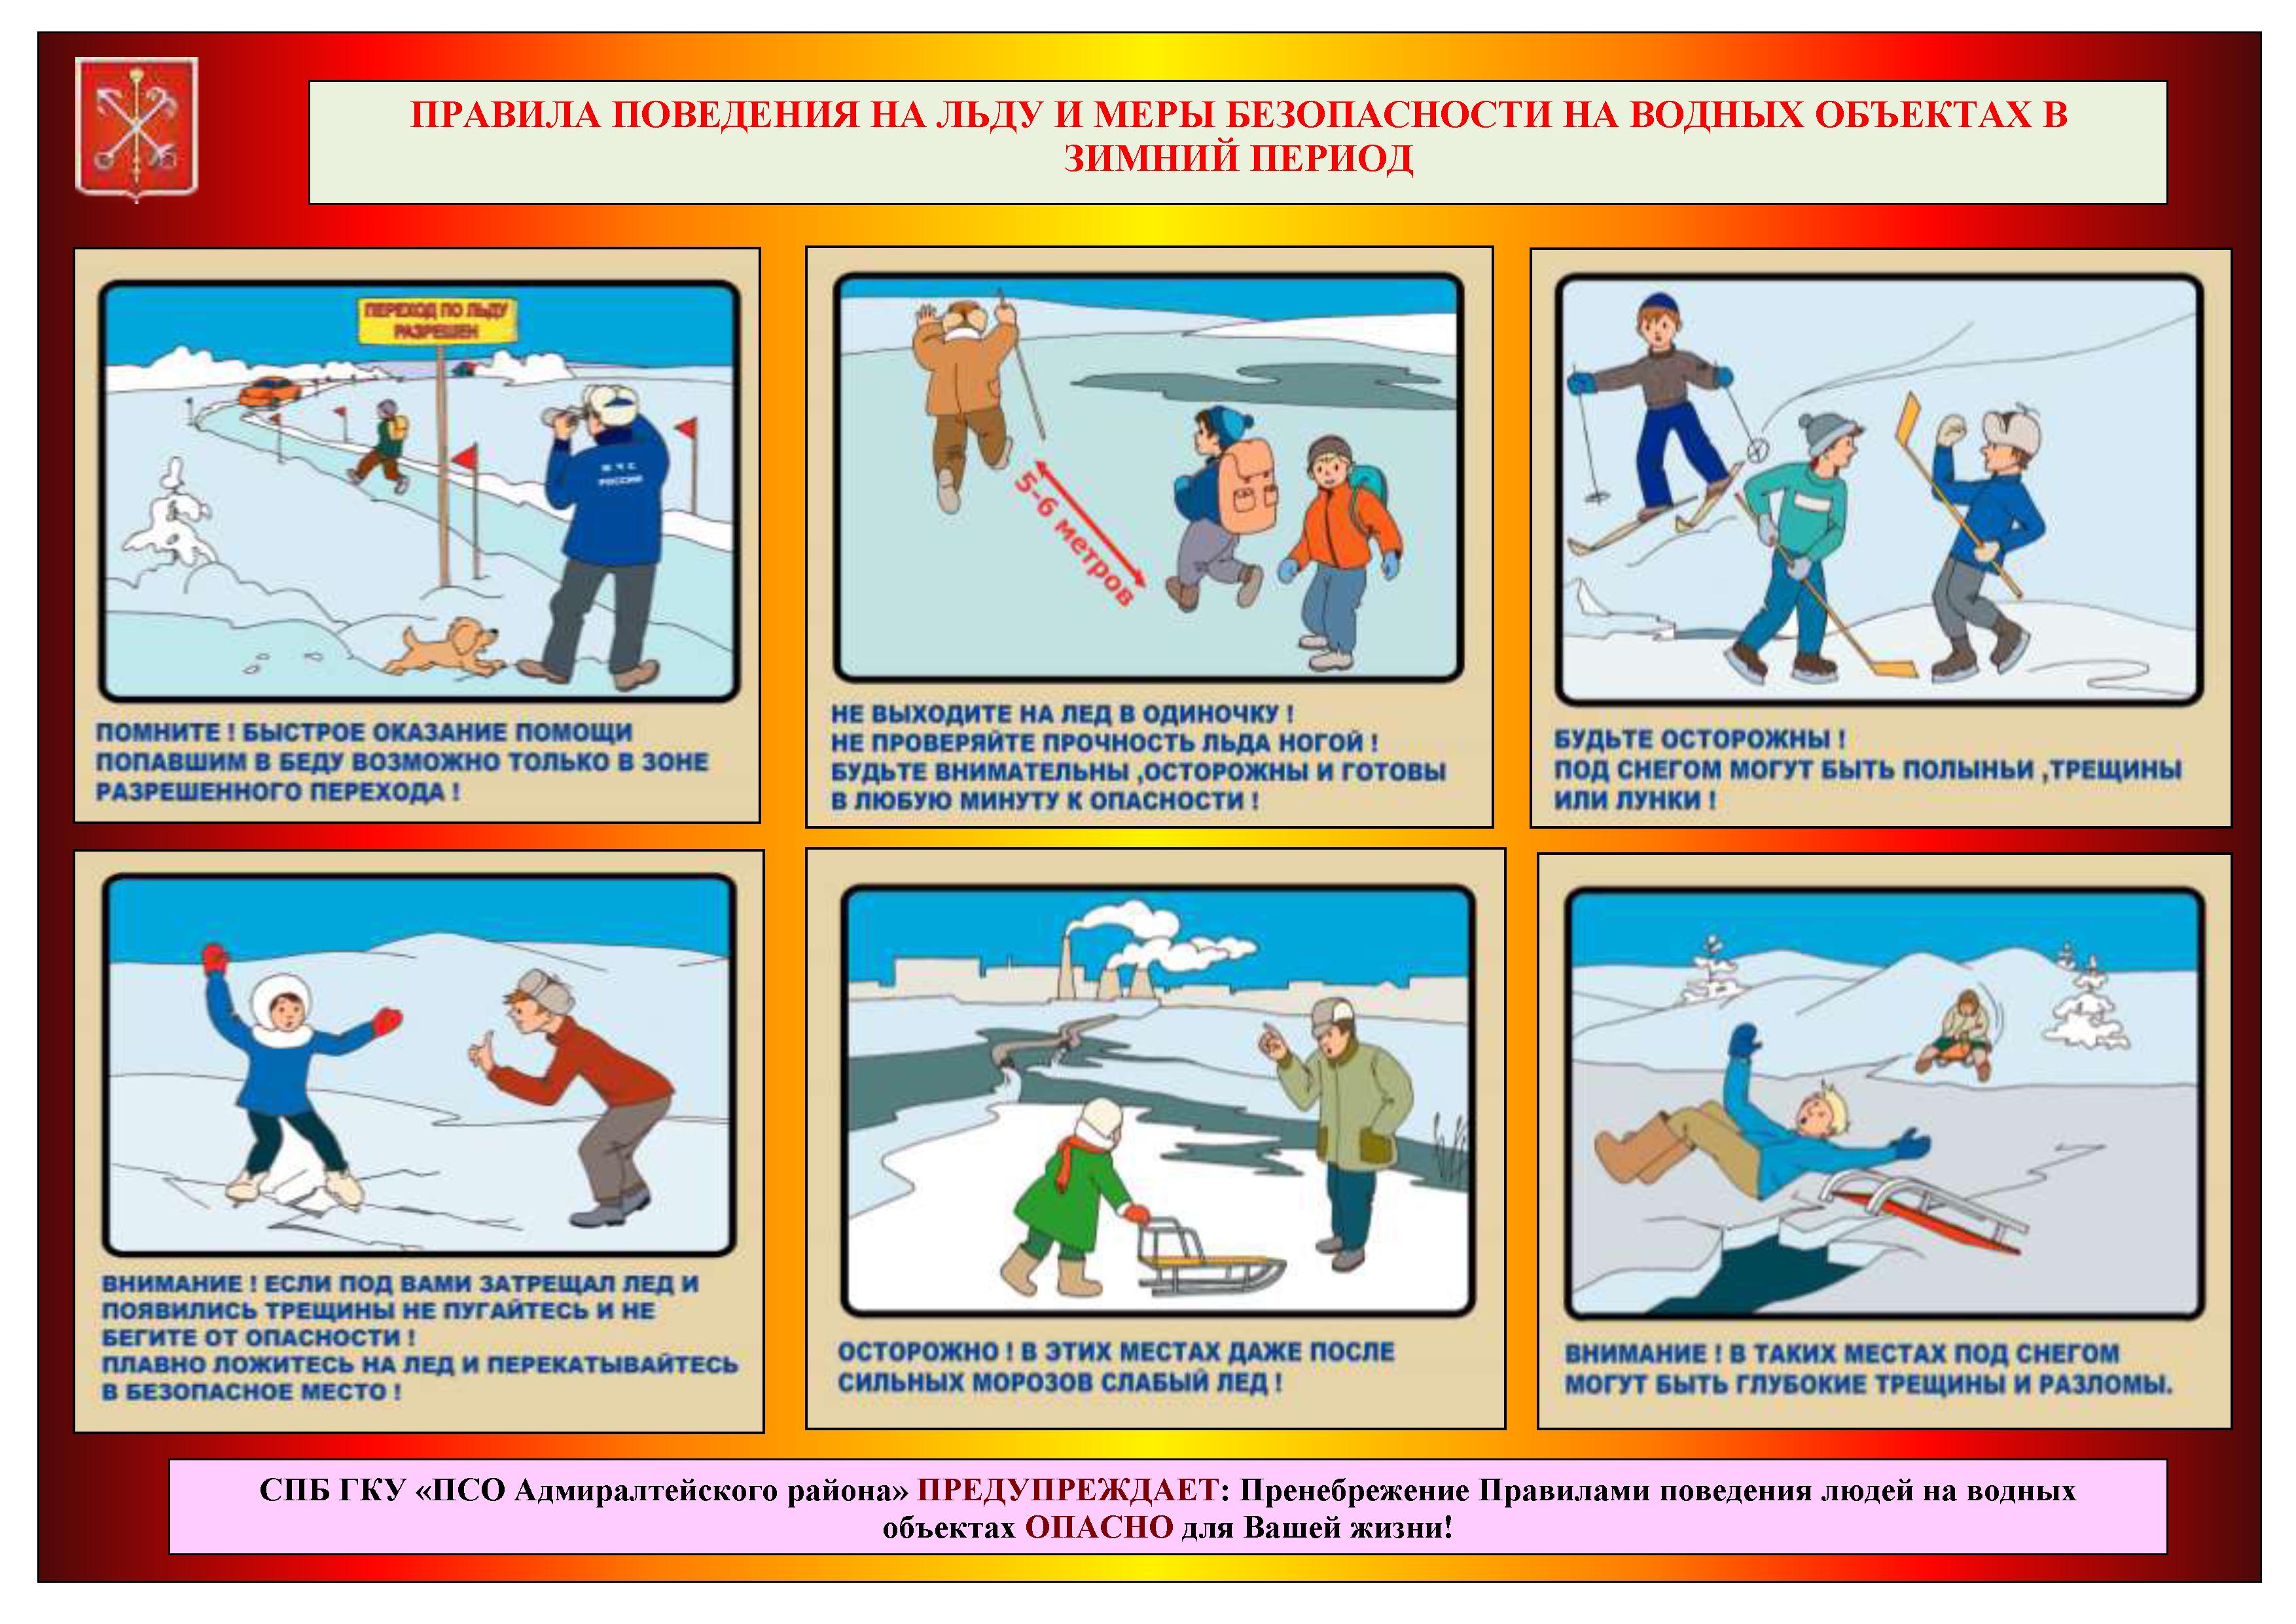 Безопасное поведение детей на водных объектах. Меры безопасности на льду для детей. Памятка правила безопасности на льду. Меры предосторожности и правила поведения на льду памятка. Правила поведенияналюду.